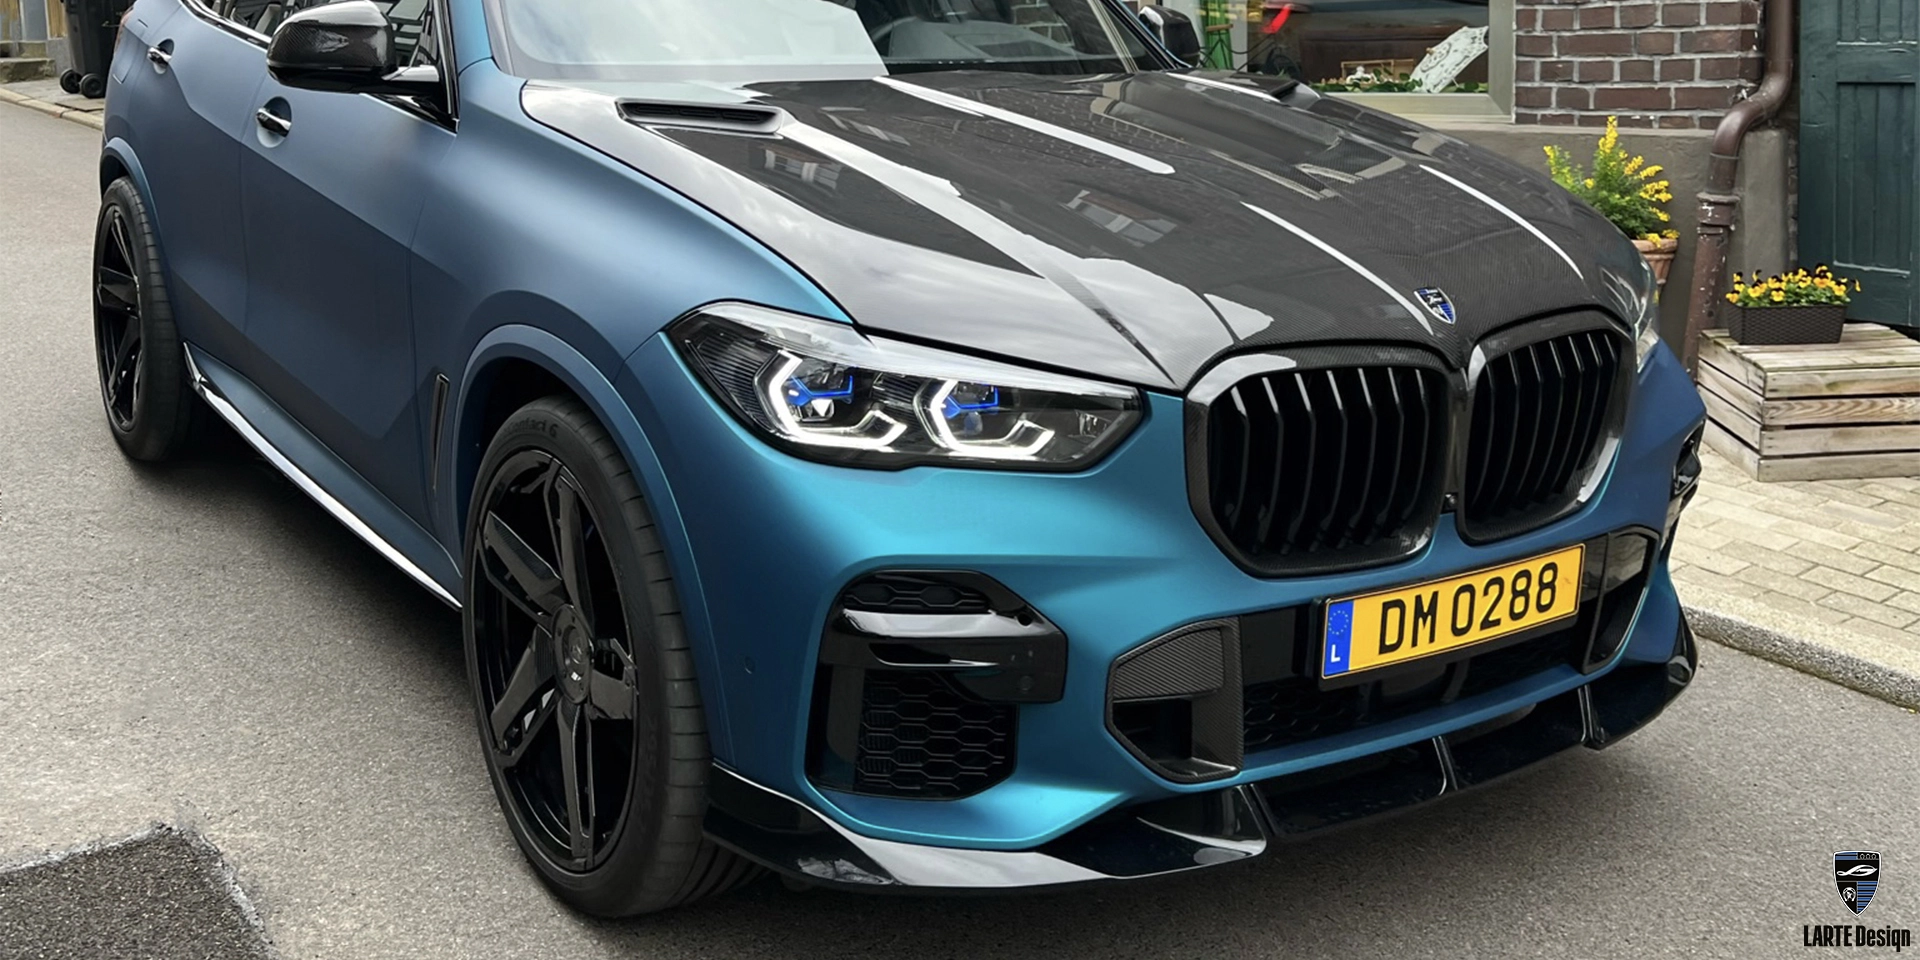 Цена внедорожника с капотом из углеродного волокна для BMW X5 M sport G05 в упаковке 2021